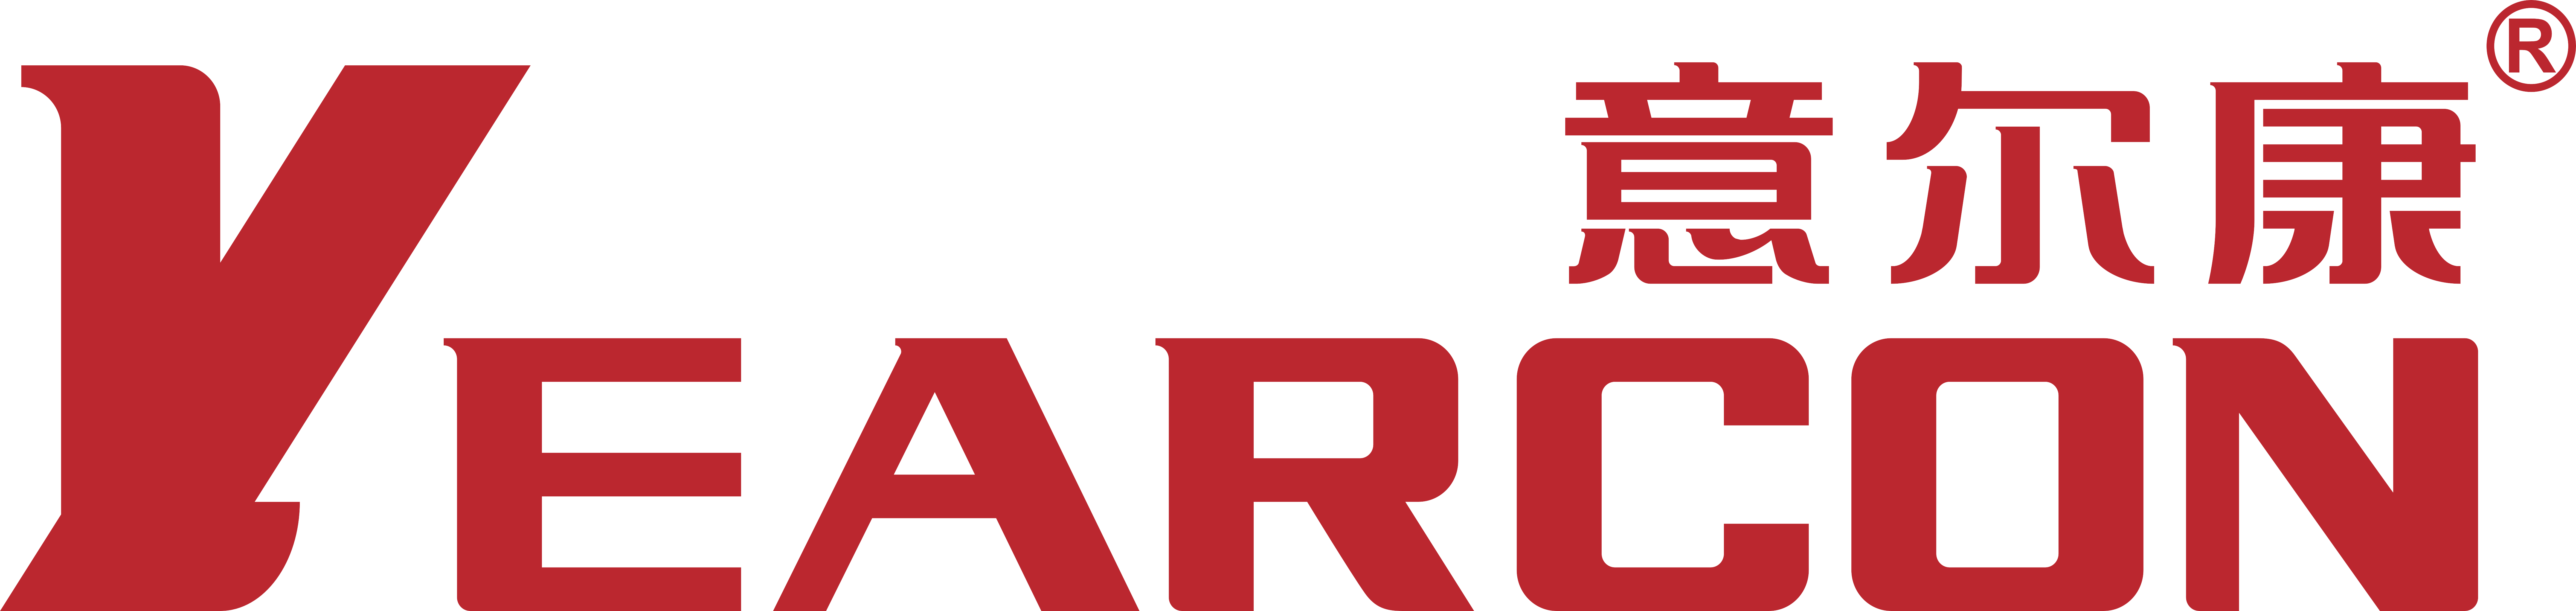 意尔康标志图片 logo图片